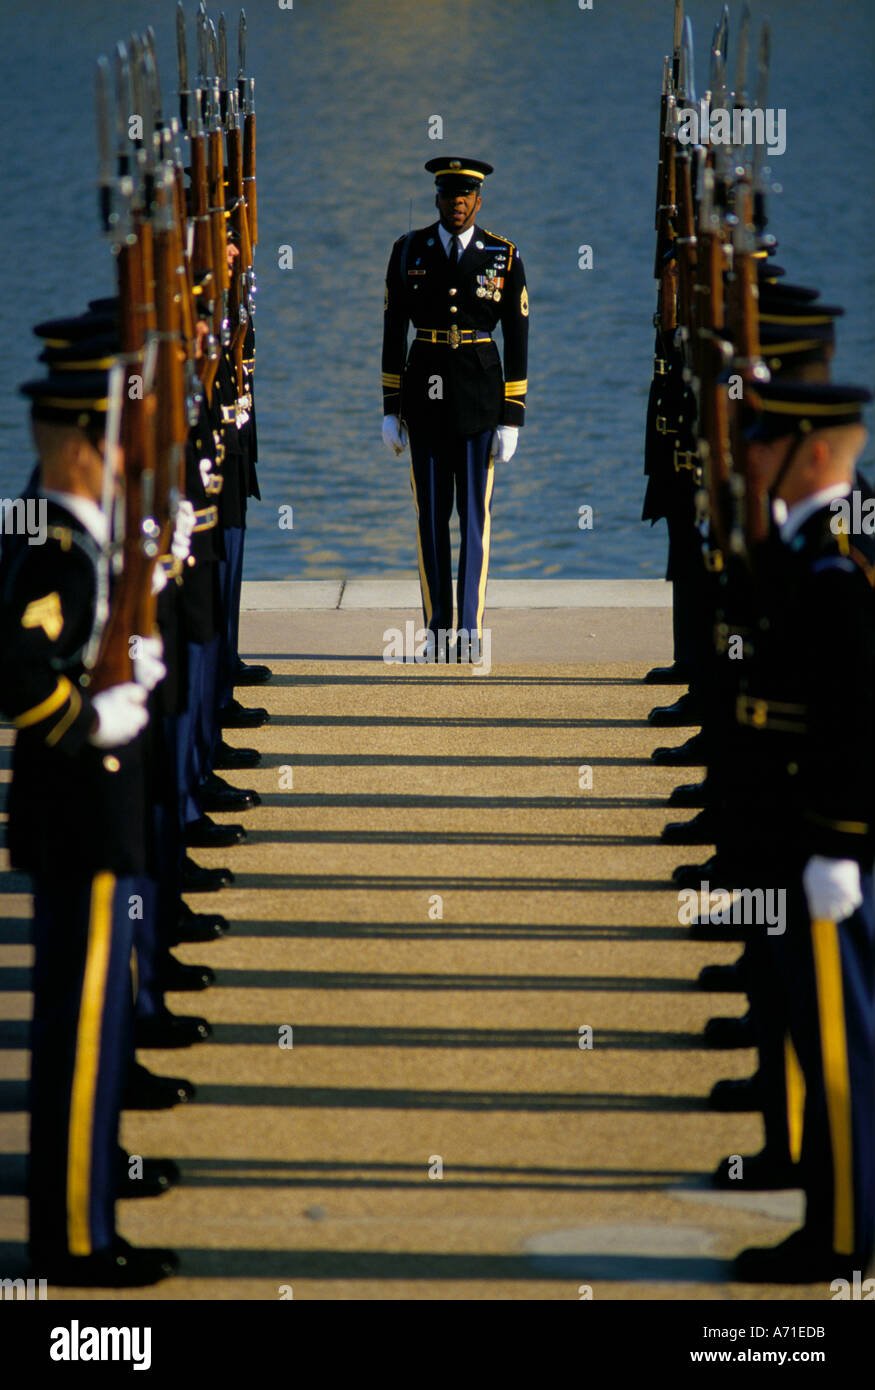 Army Dress Uniform Blue